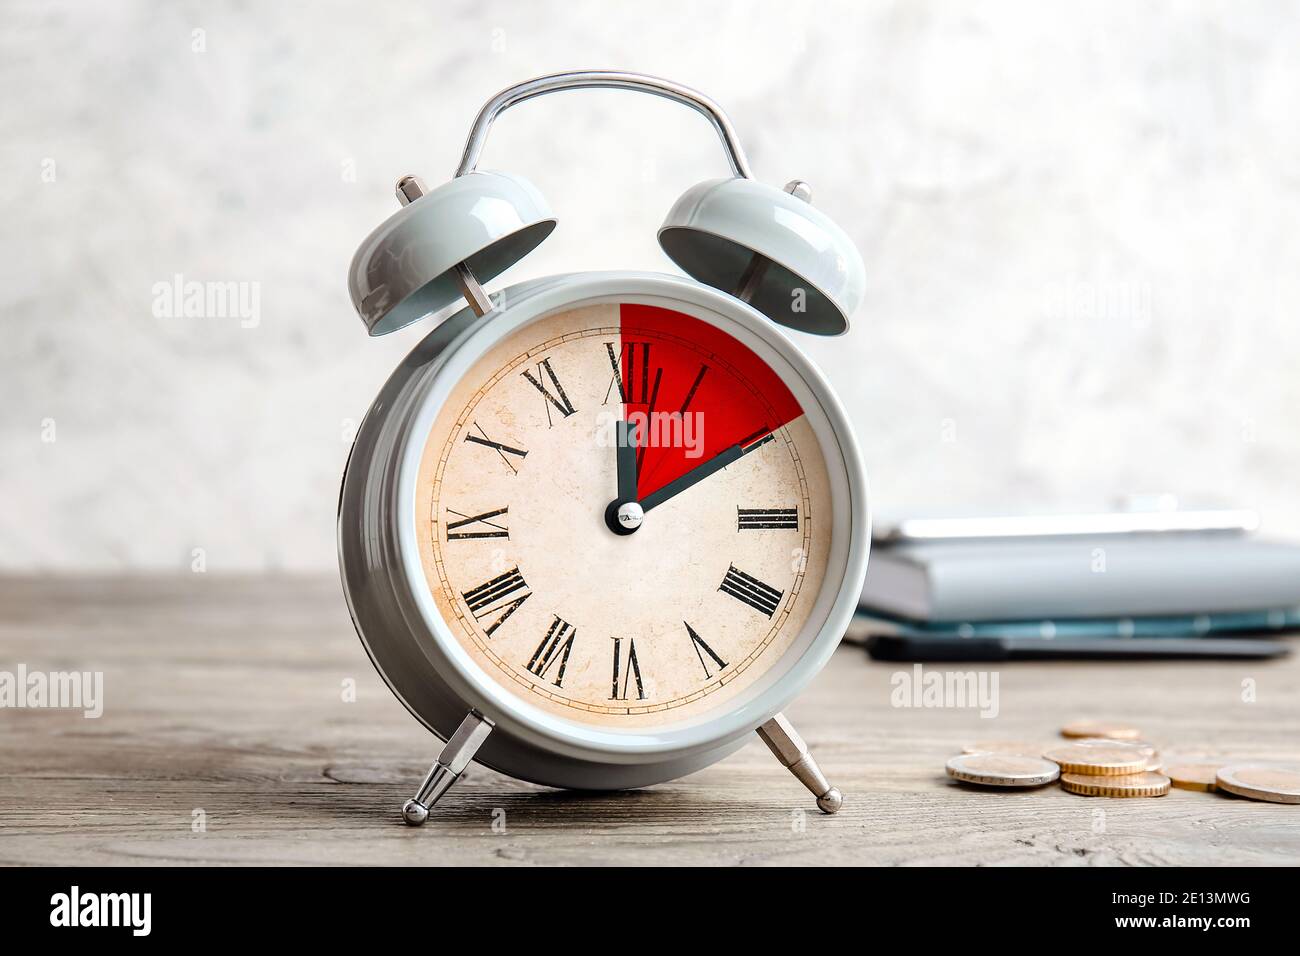 Wecker mit Timer für 10 Minuten auf dem Tisch. Zeitmanagement-Konzept  Stockfotografie - Alamy